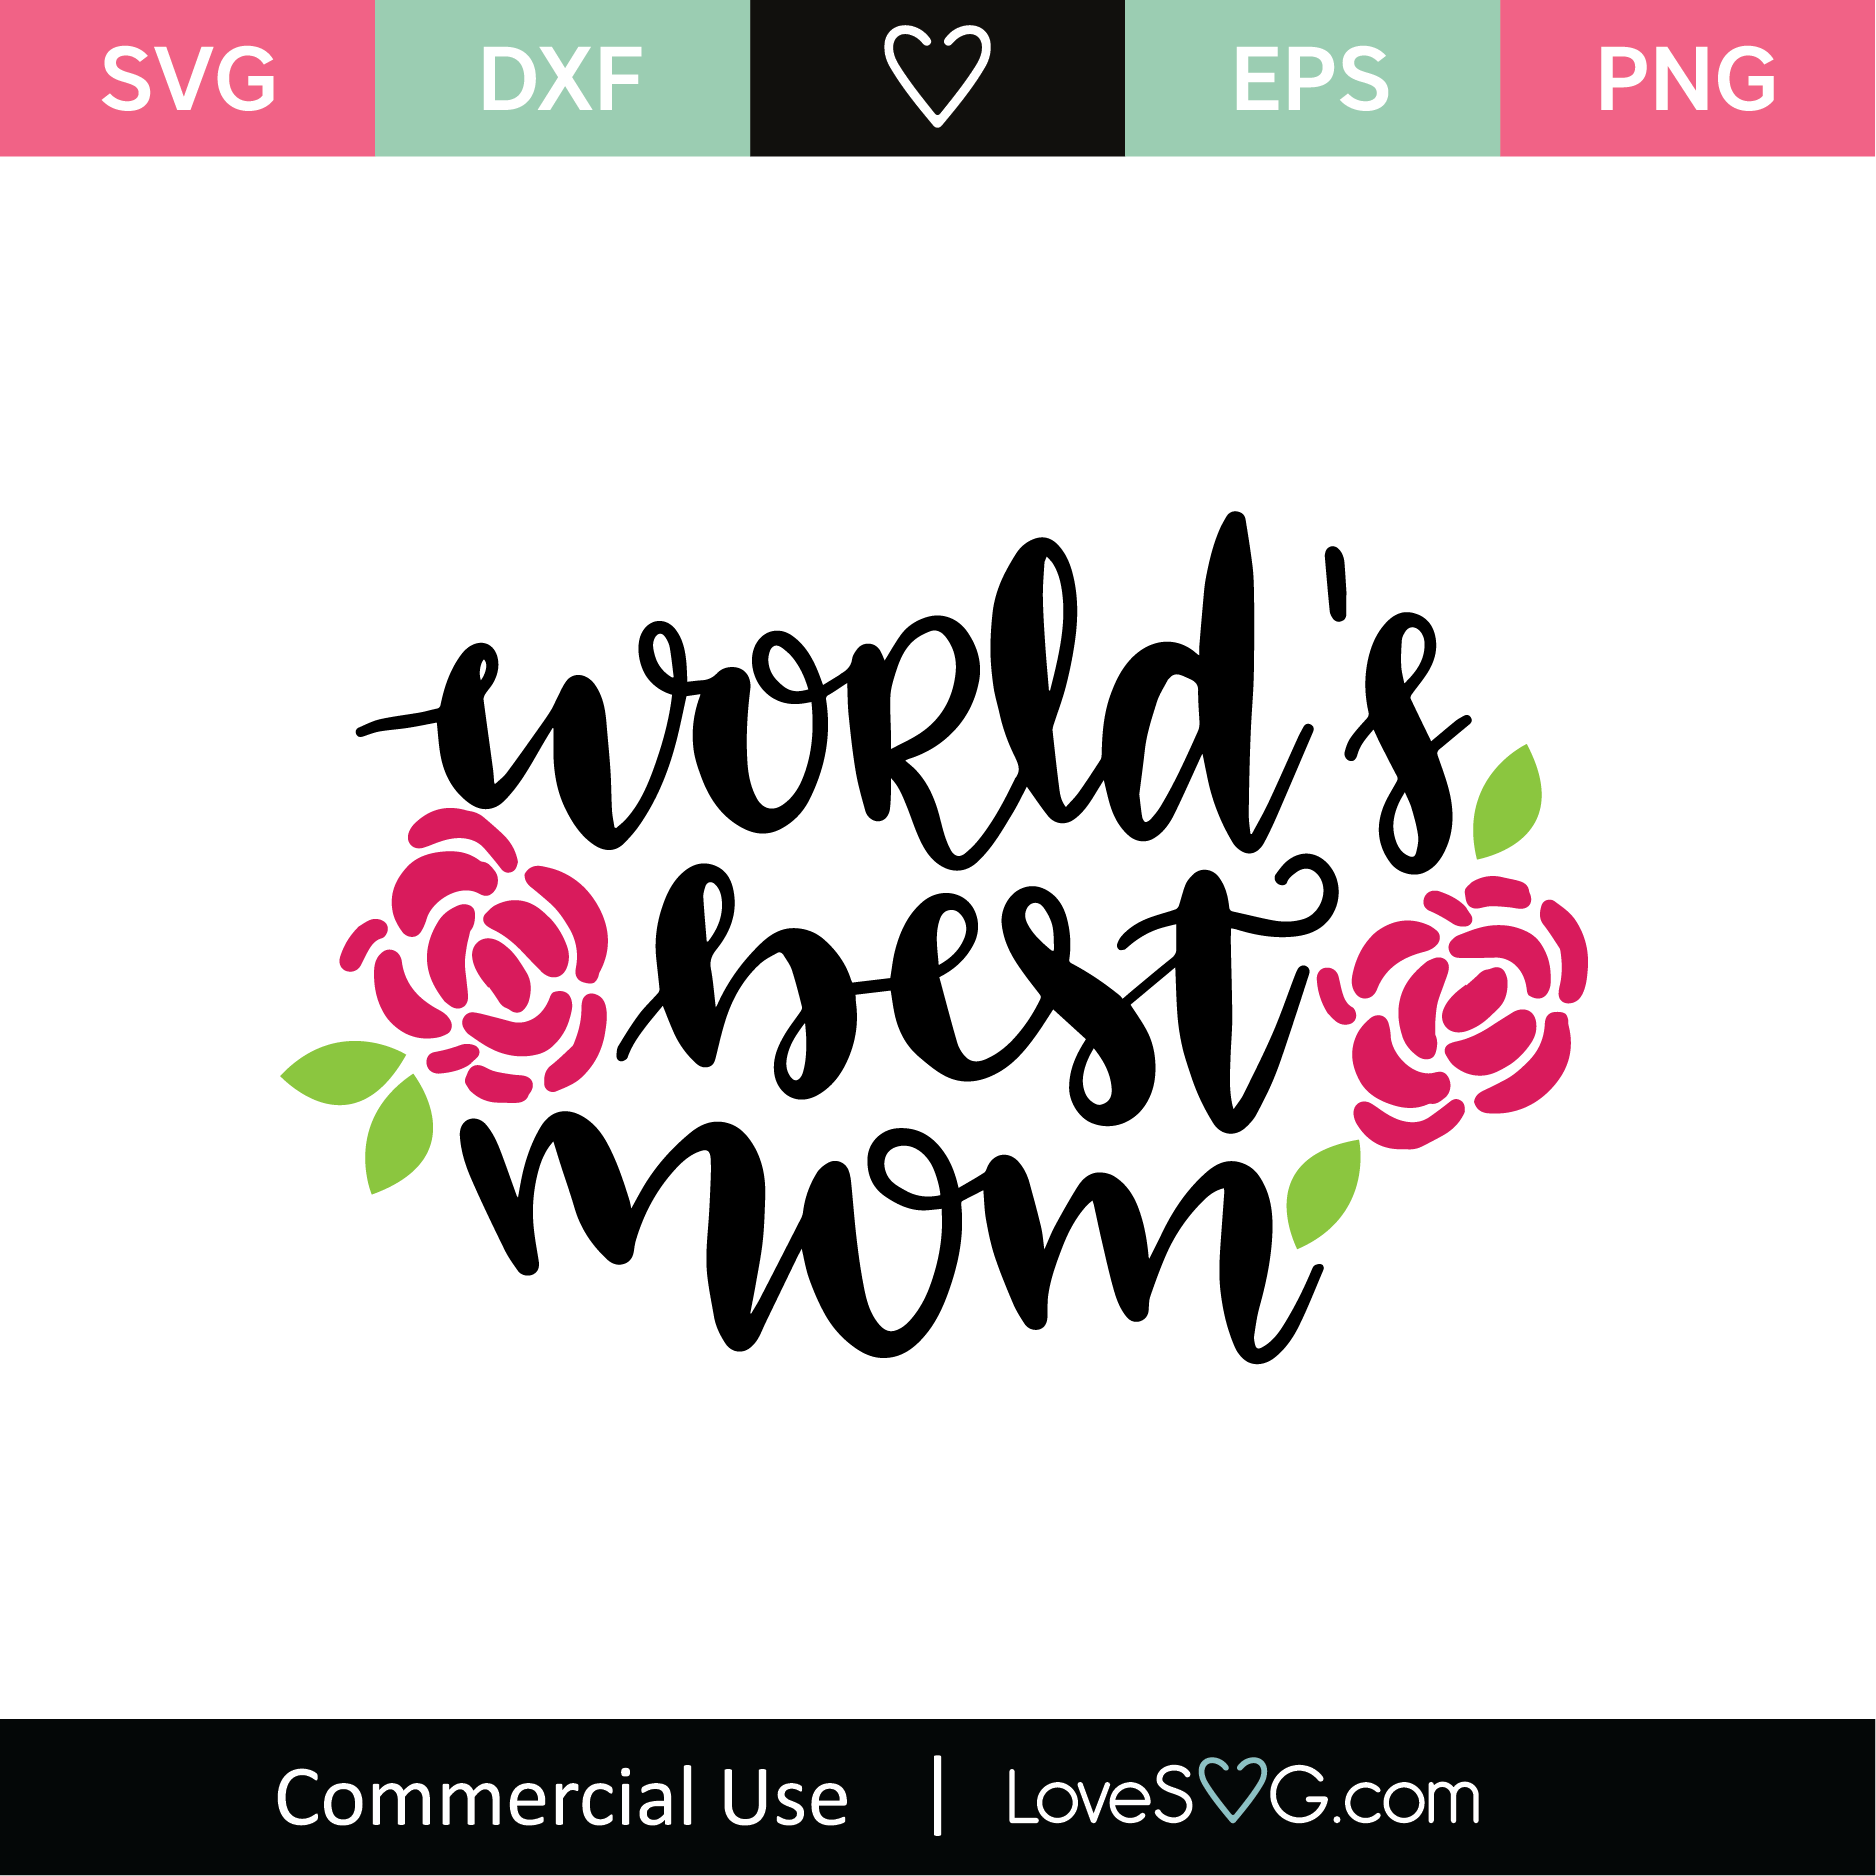 Download World's Best Mom SVG Cut File 2 - Lovesvg.com